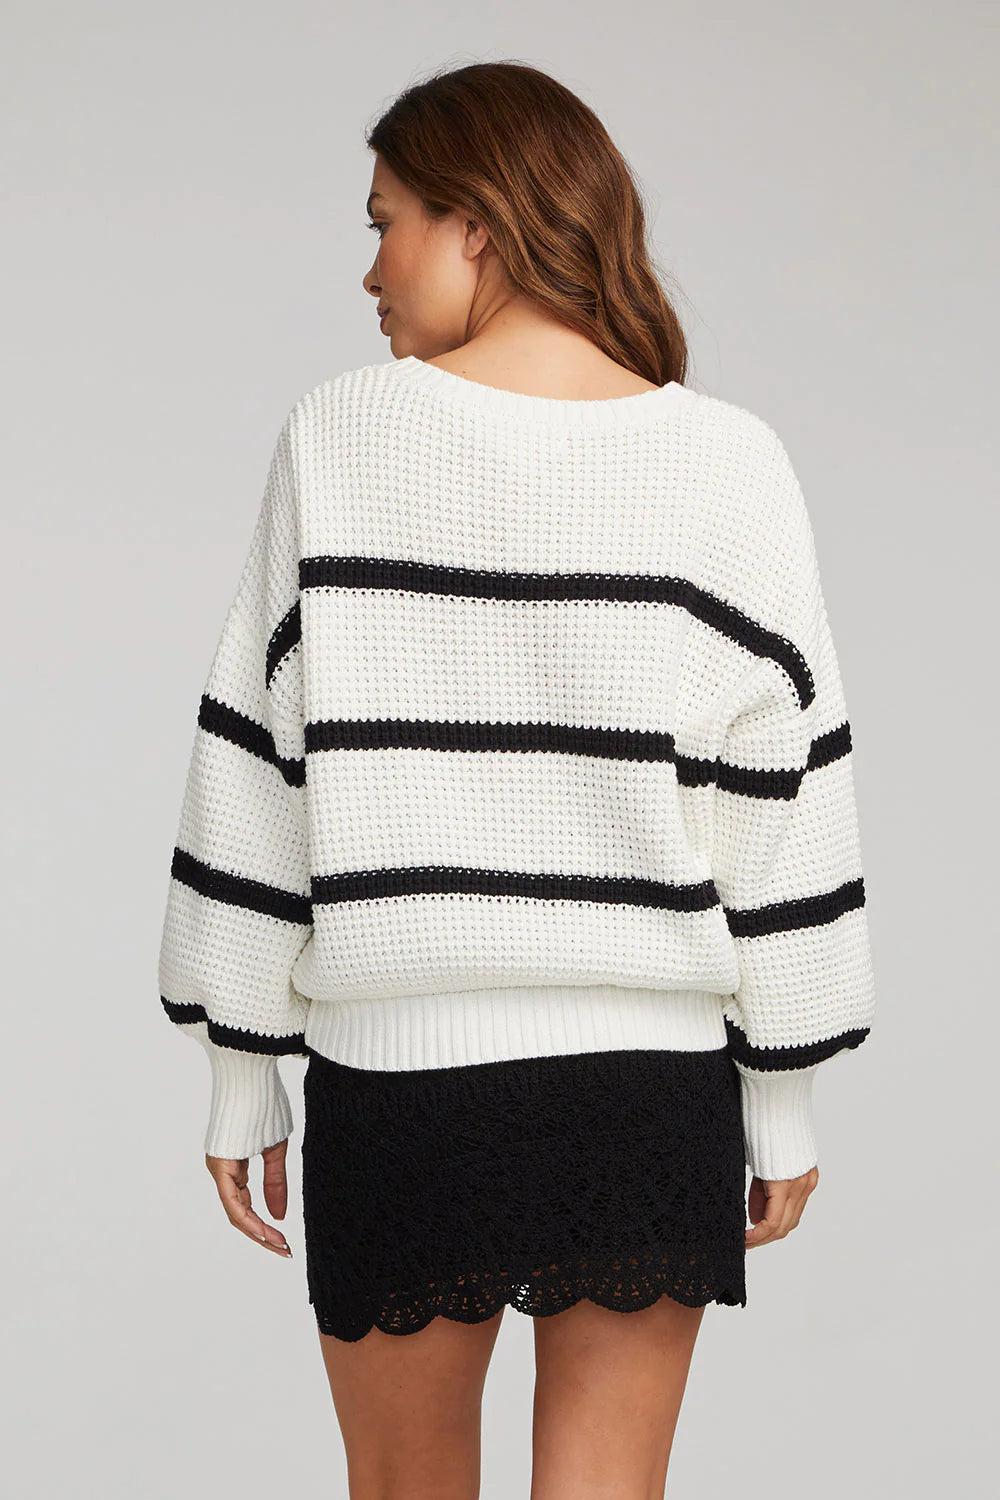 Frenchi Sweater